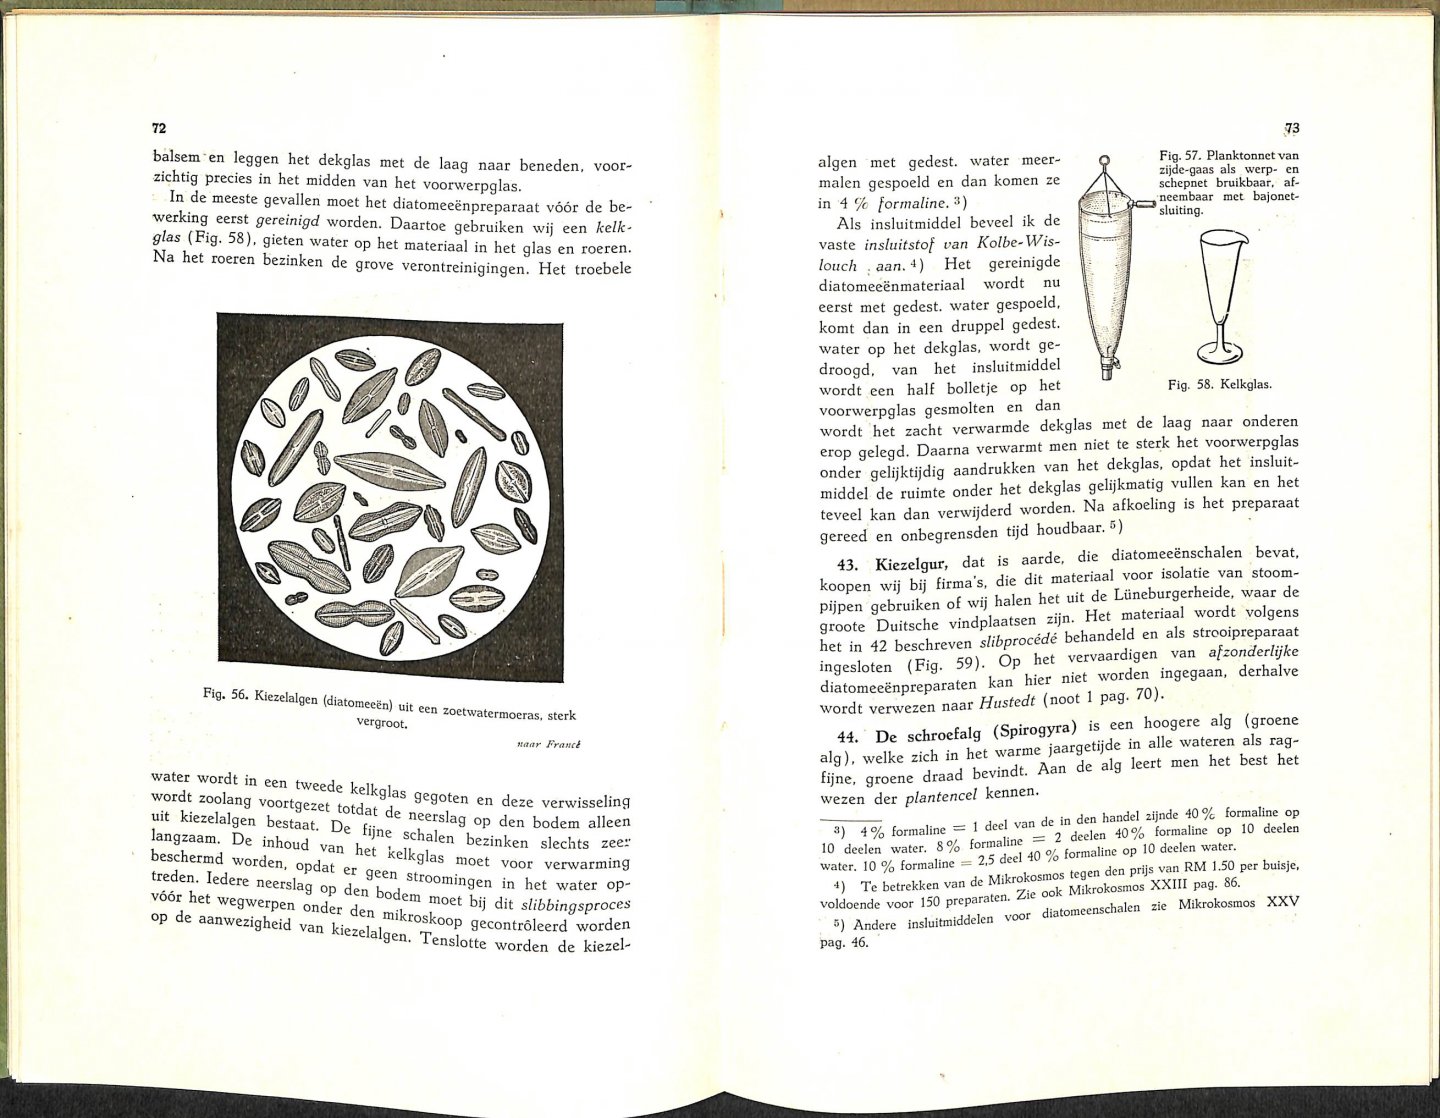 Stehli, George - Handboek voor mikroskopie. Handleiding voor het gebruik bij het onderwijs aan de middelbare scholen, landbouwscholen e.d. en tot het zelf vervaardigen van preparaten. Met 125 afbeeldingen